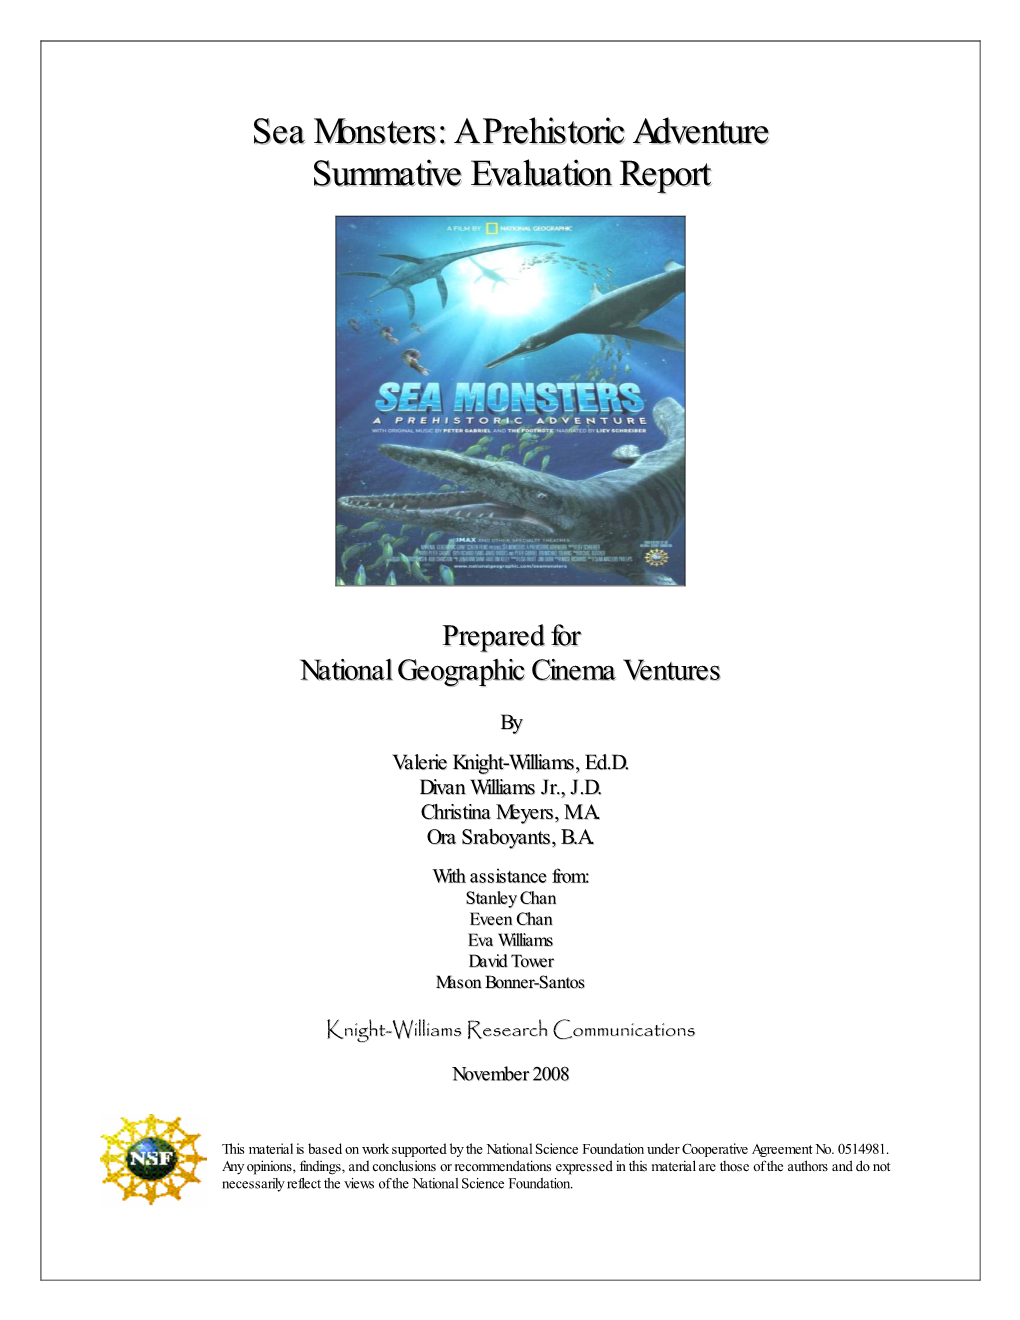 Sea Monsters: a Prehiistoriic Adventure Summatiive Evalluatiion Report